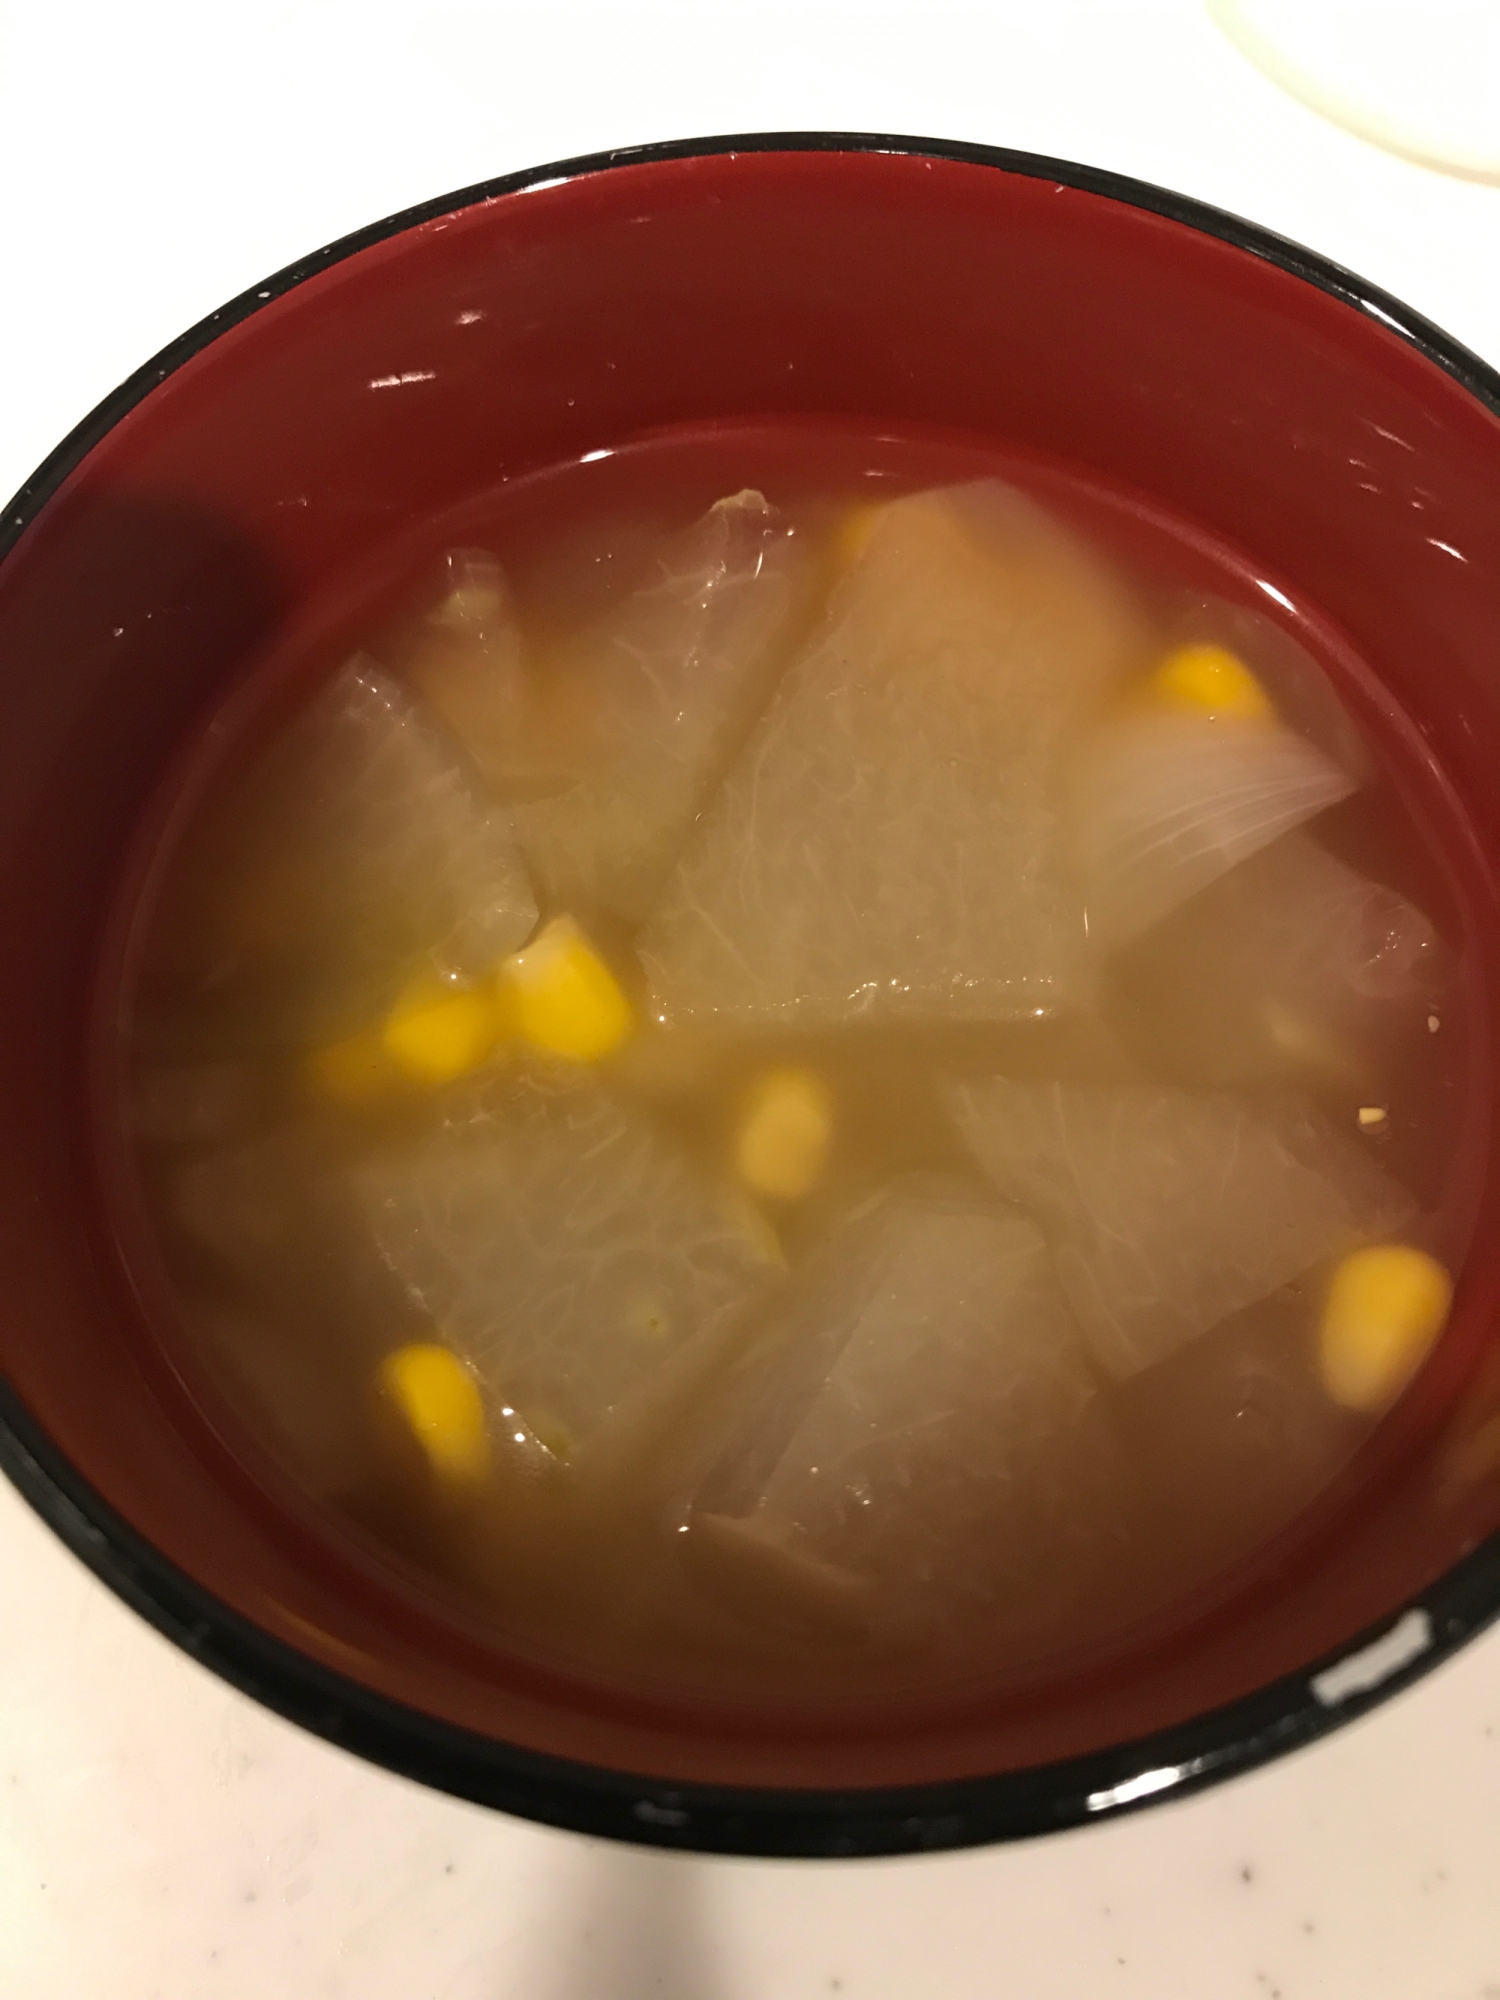 冬瓜とコーンのスープ